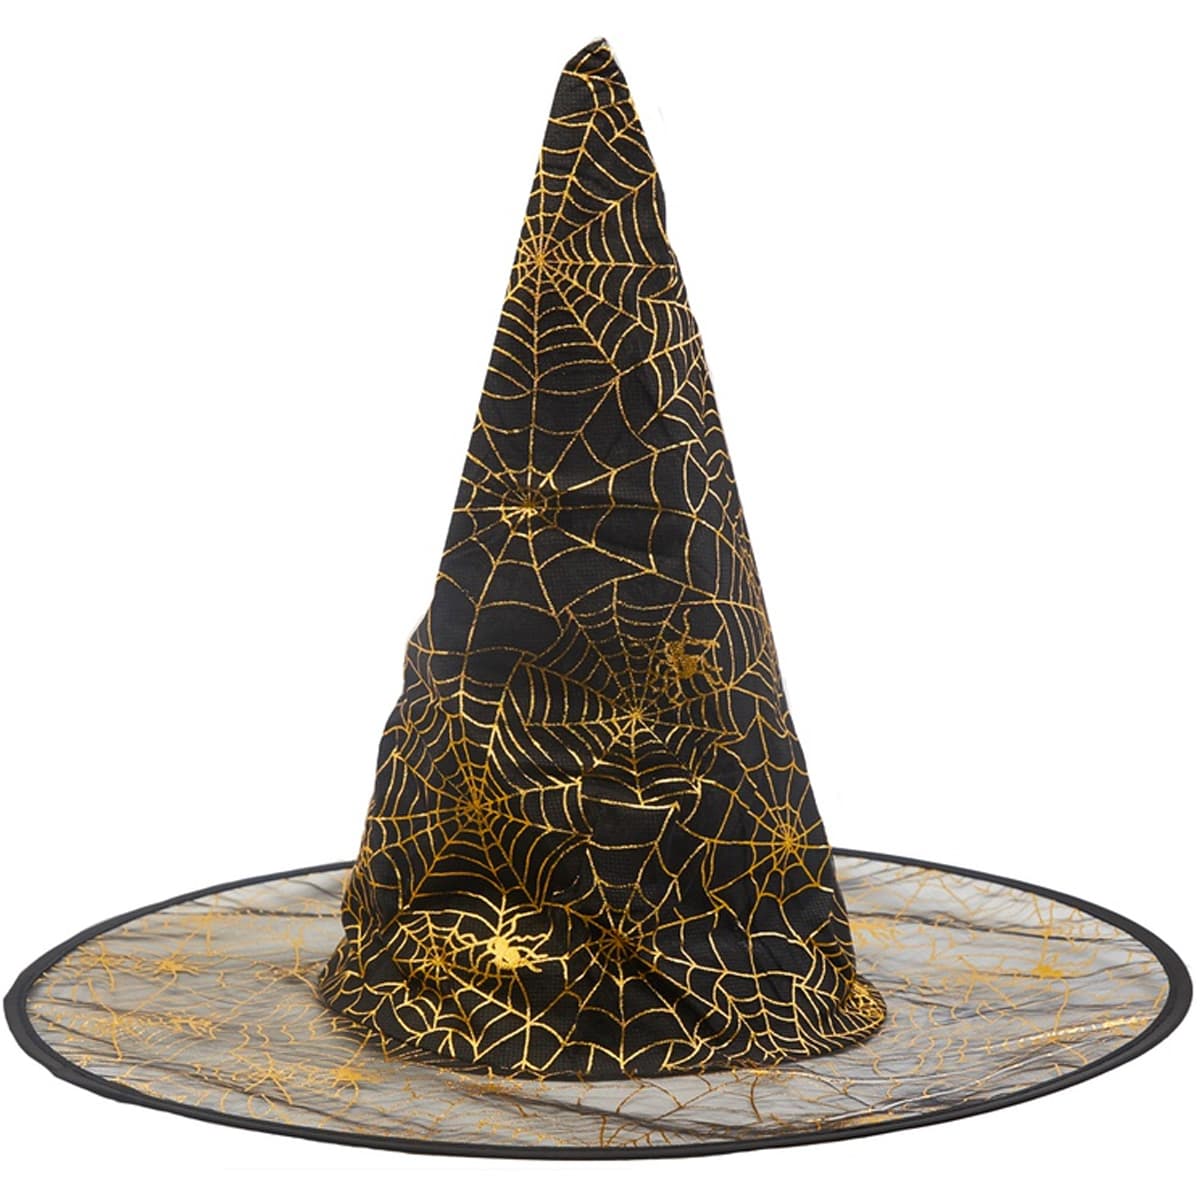 1501-5158 Шляпа ведьмы Паутина черная 45см/G